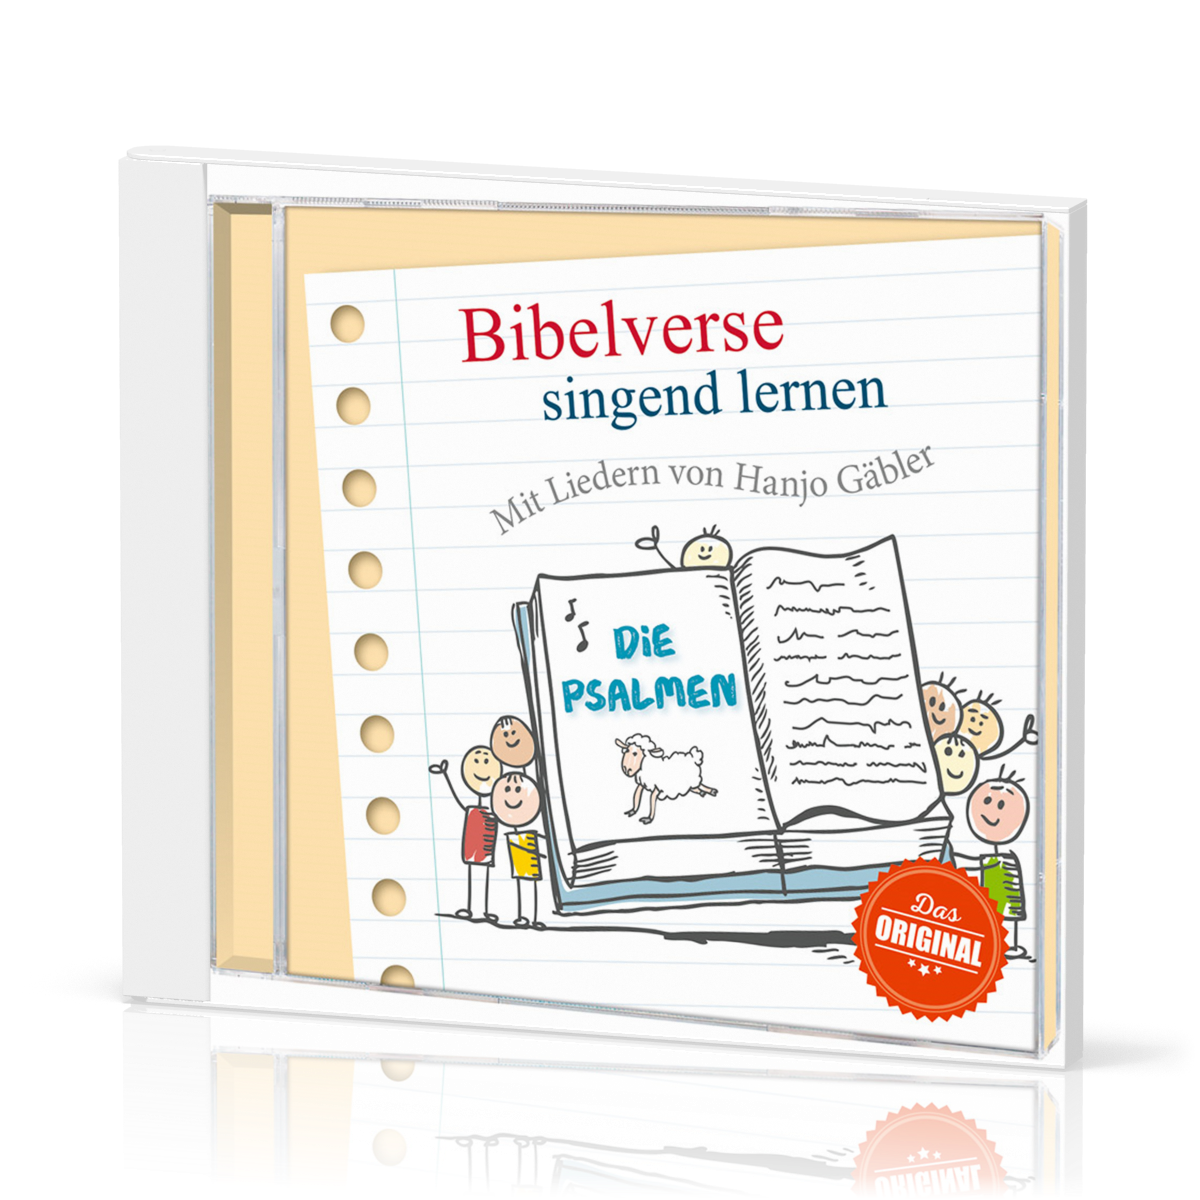 Bibelverse singend lernen - Die Psalmen CD - Mit Liedern von Hanjo Gäbler